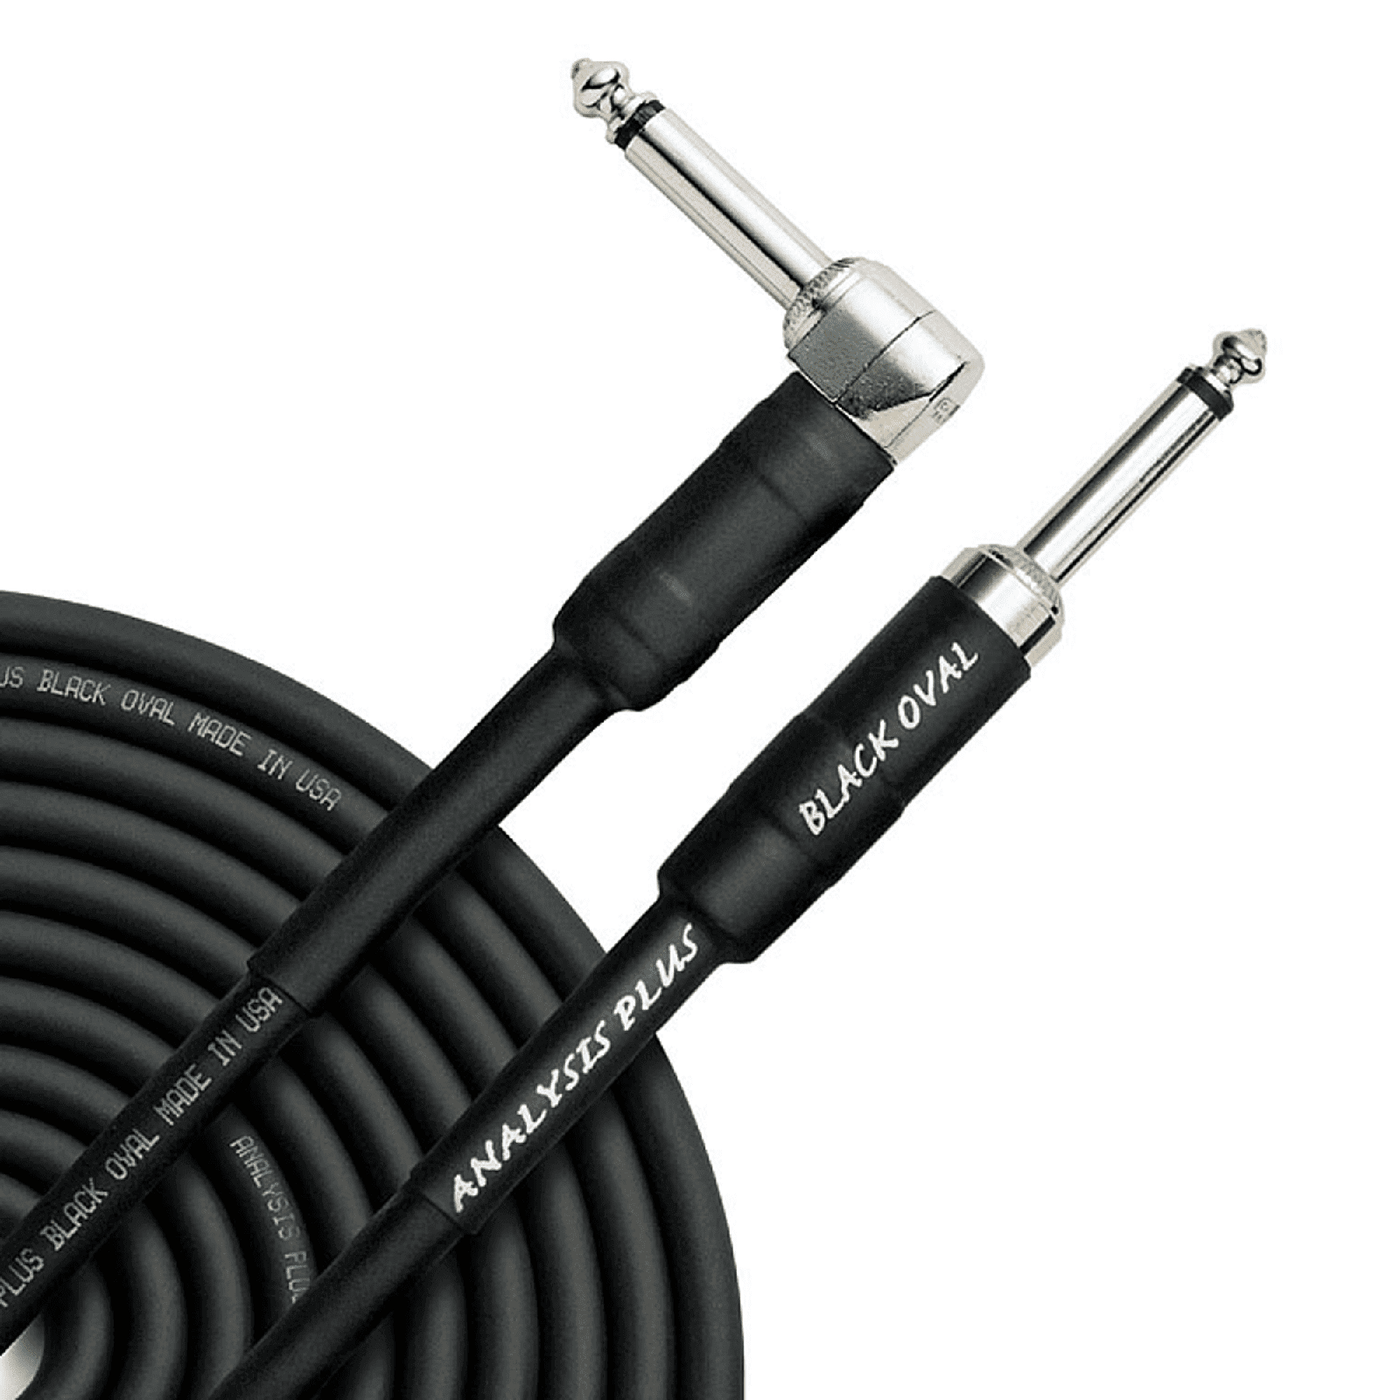 Analysis Plus Black Oval - Cable Instrumento - El cable Black Oval es silencioso, flexible y suena la raja. Un cable de alta gama a muy buen precio. Además cumple con todas las normas ROHS. El cable tiene conductores de calibre 20, una funda conductora pa